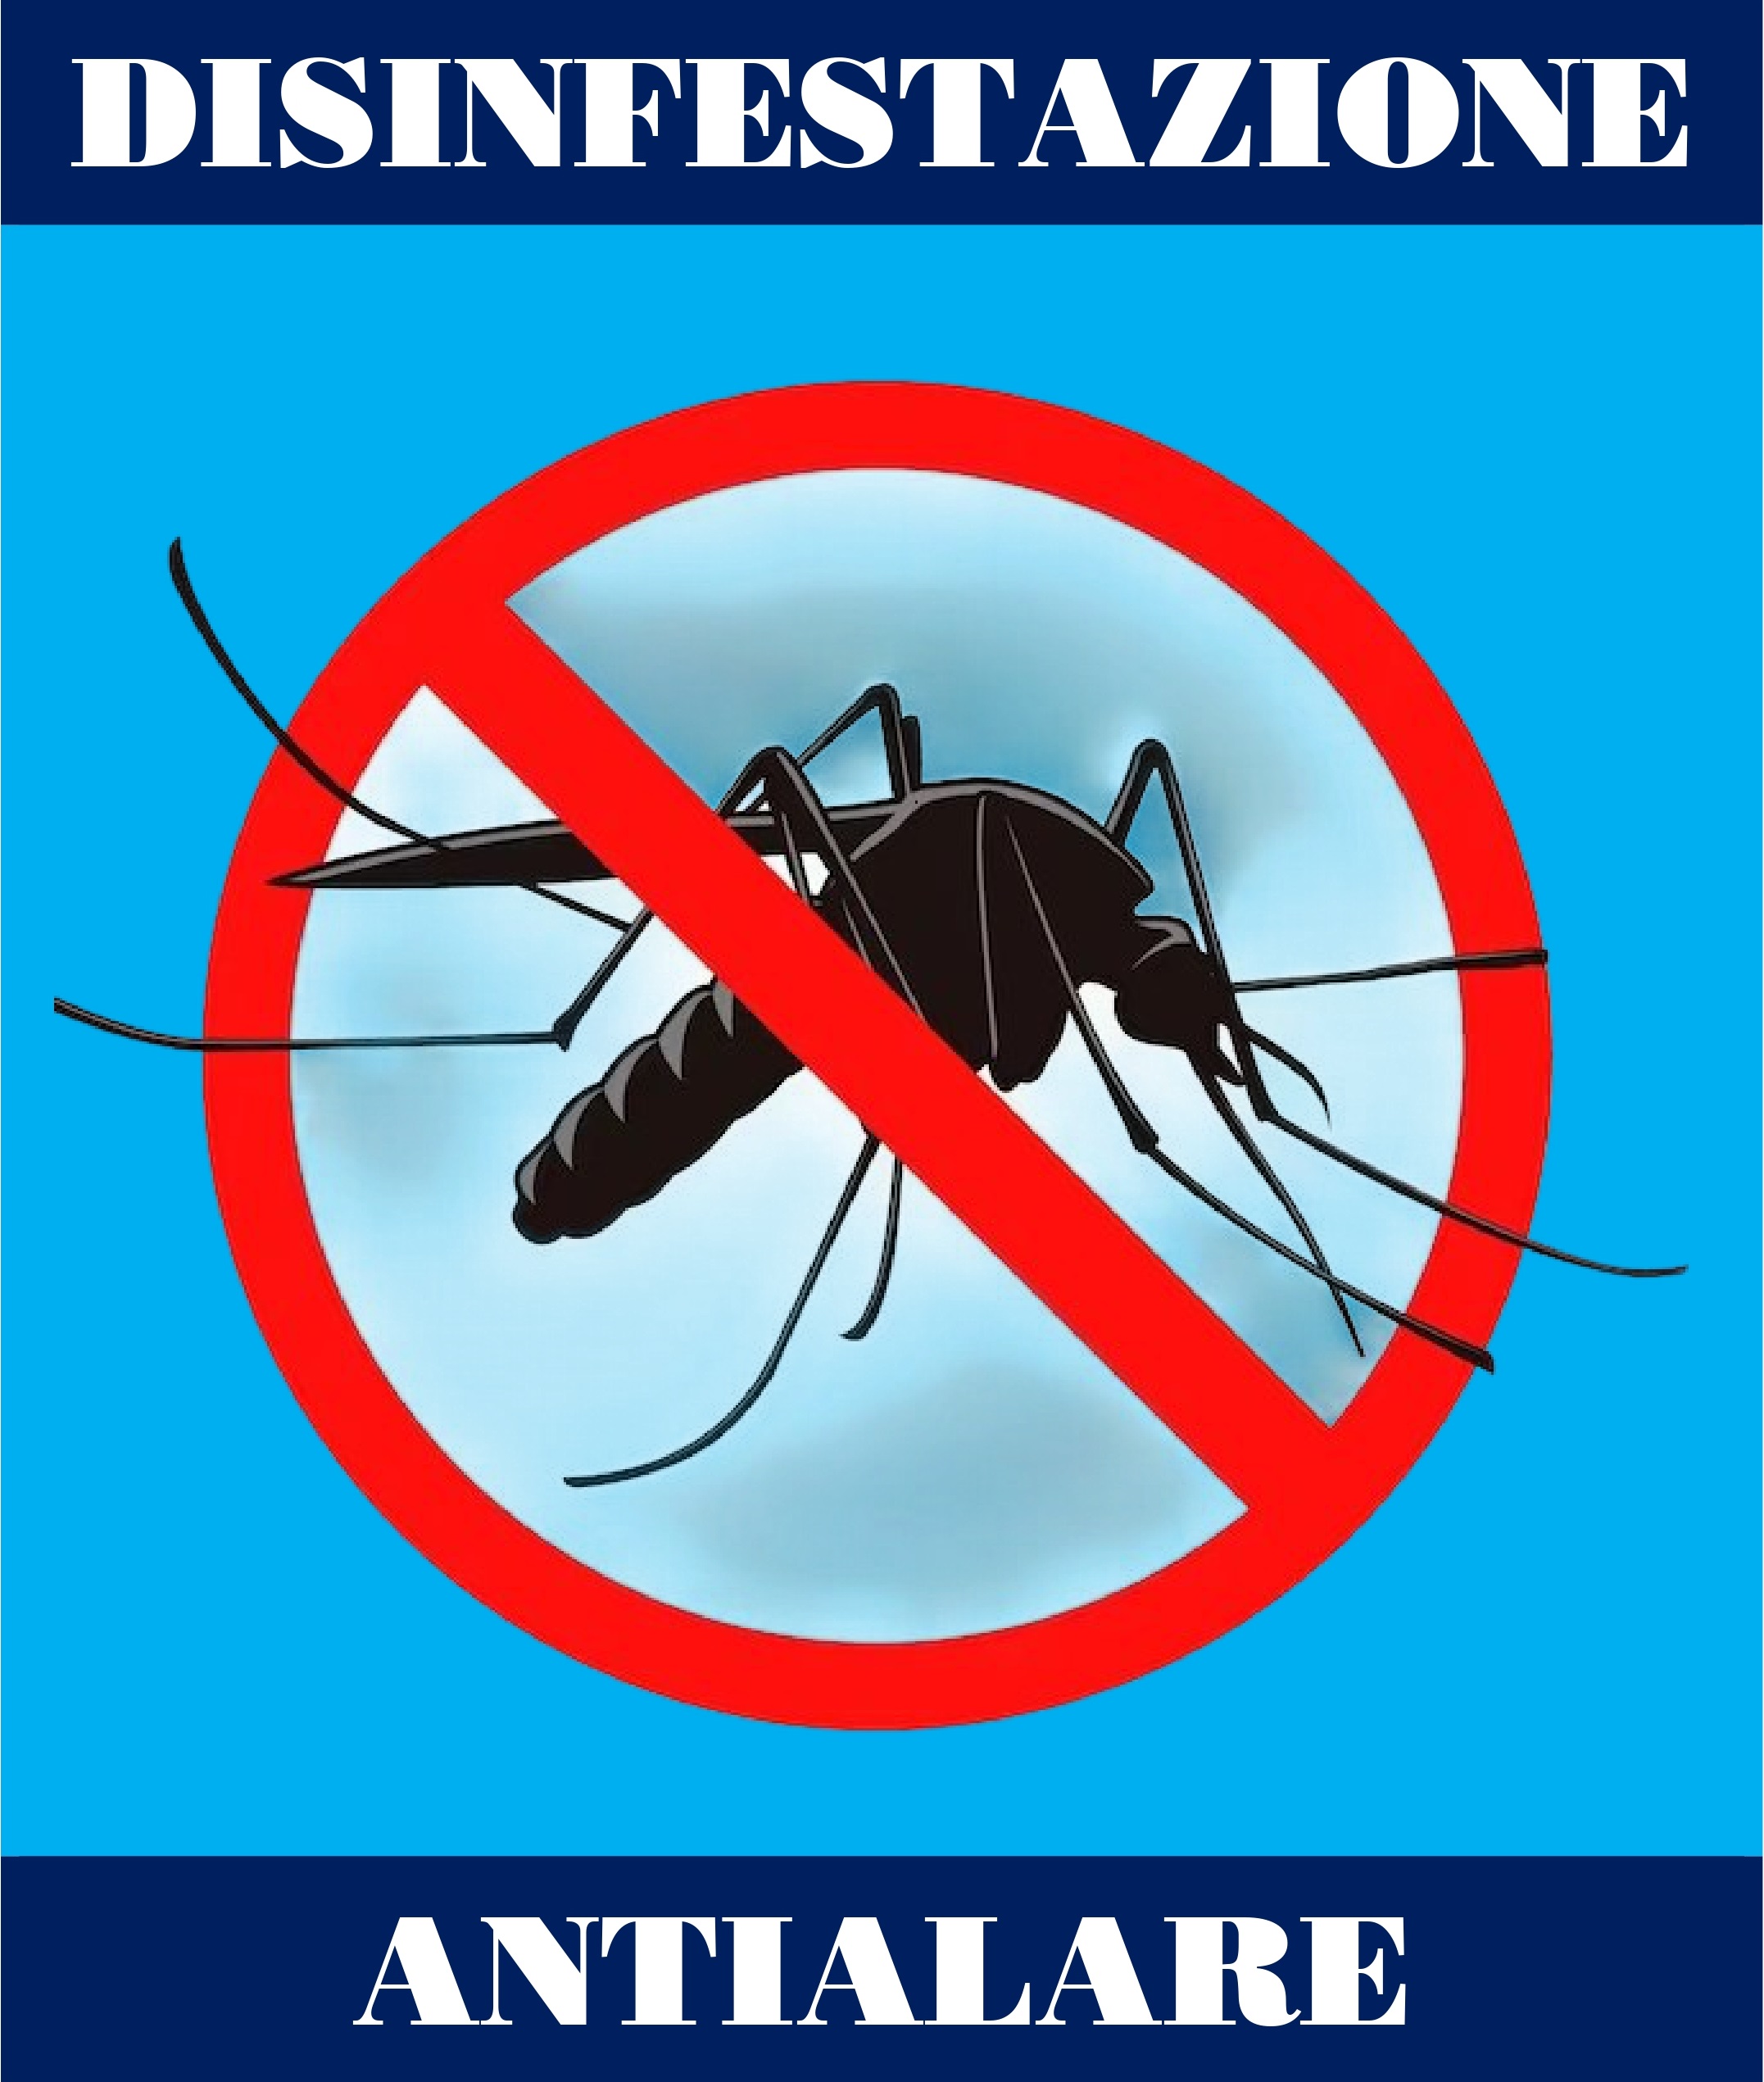 Rinviata al 2 e 3 ottobre la disinfestazione contro zanzare e insetti alati del 25 e 26 settembre